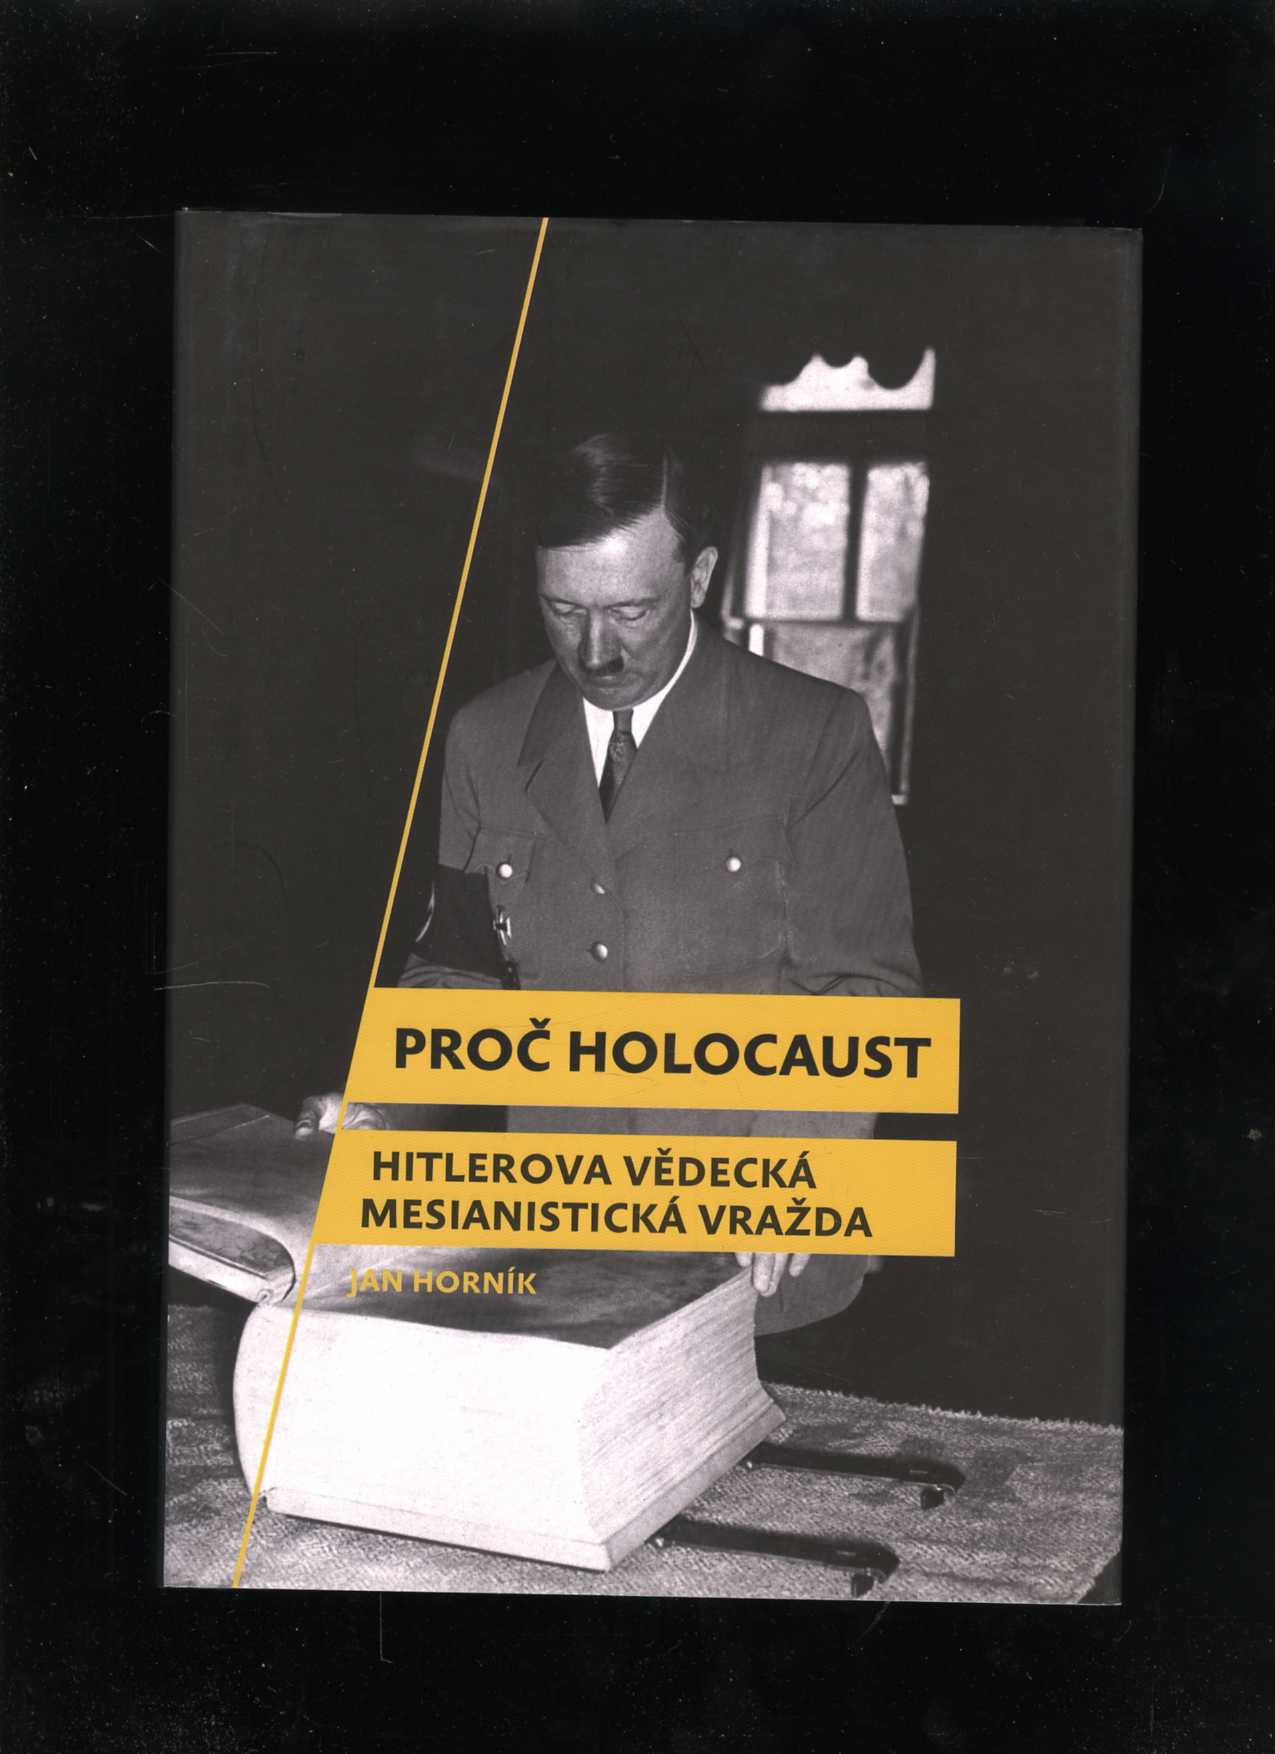 Proč holocaust (Jan Horník)